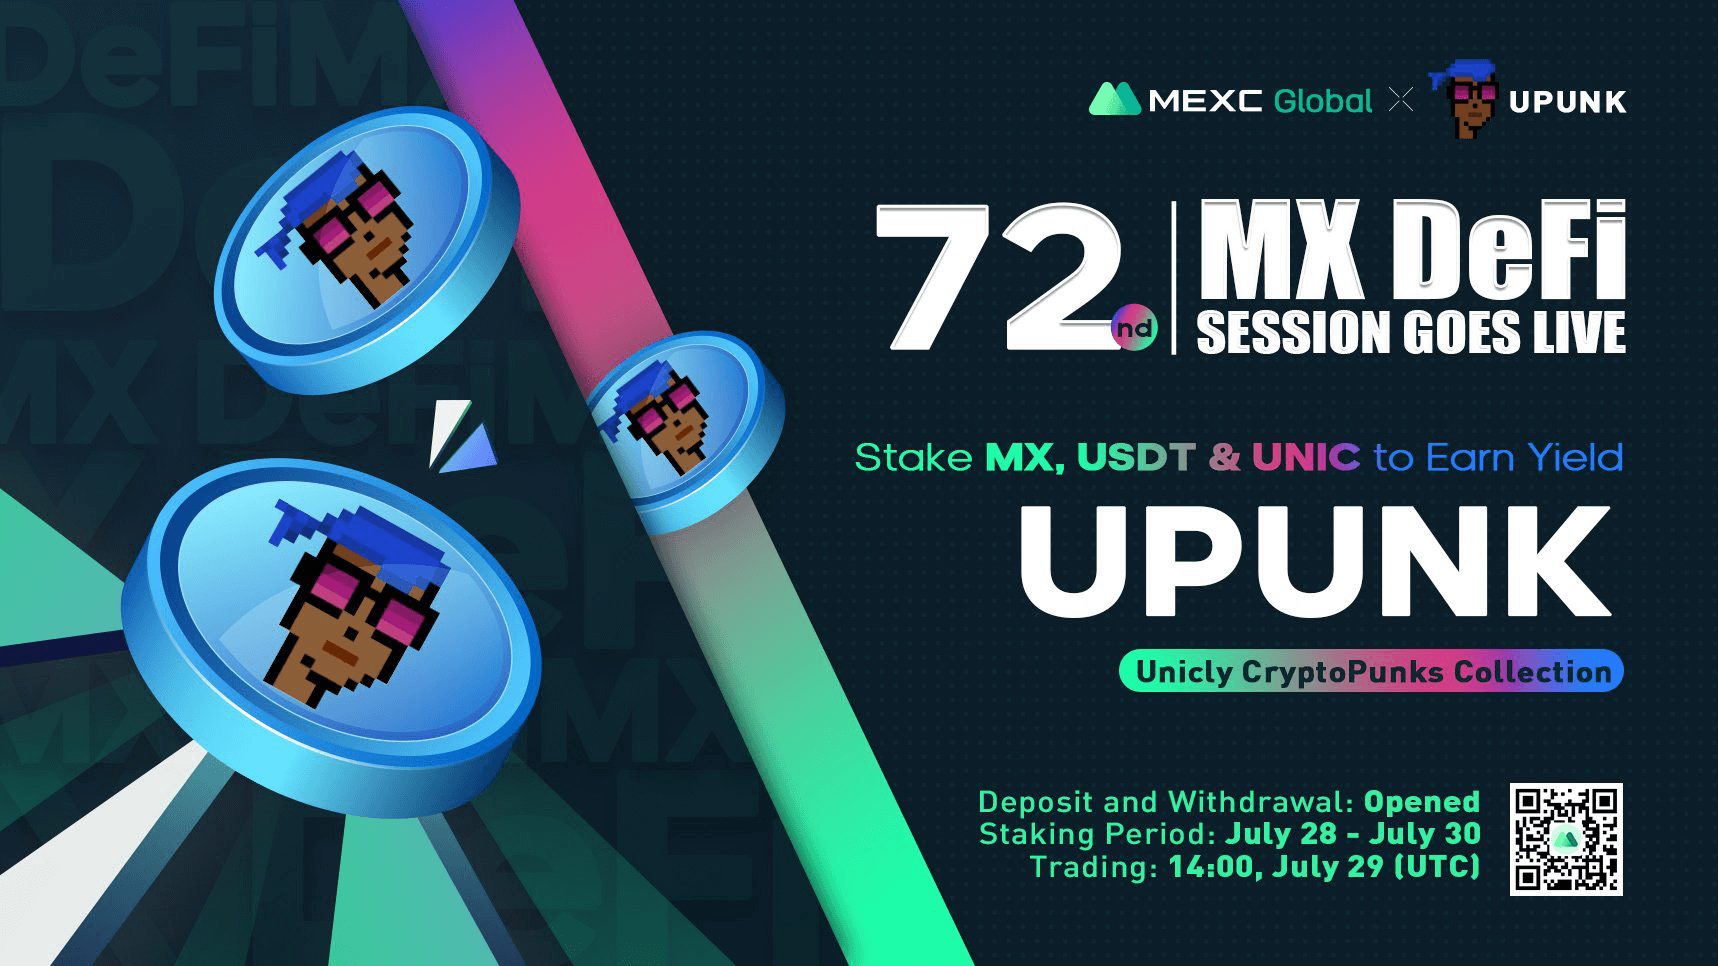 uPUNK x MEXC Global "MX DeFi'' Session